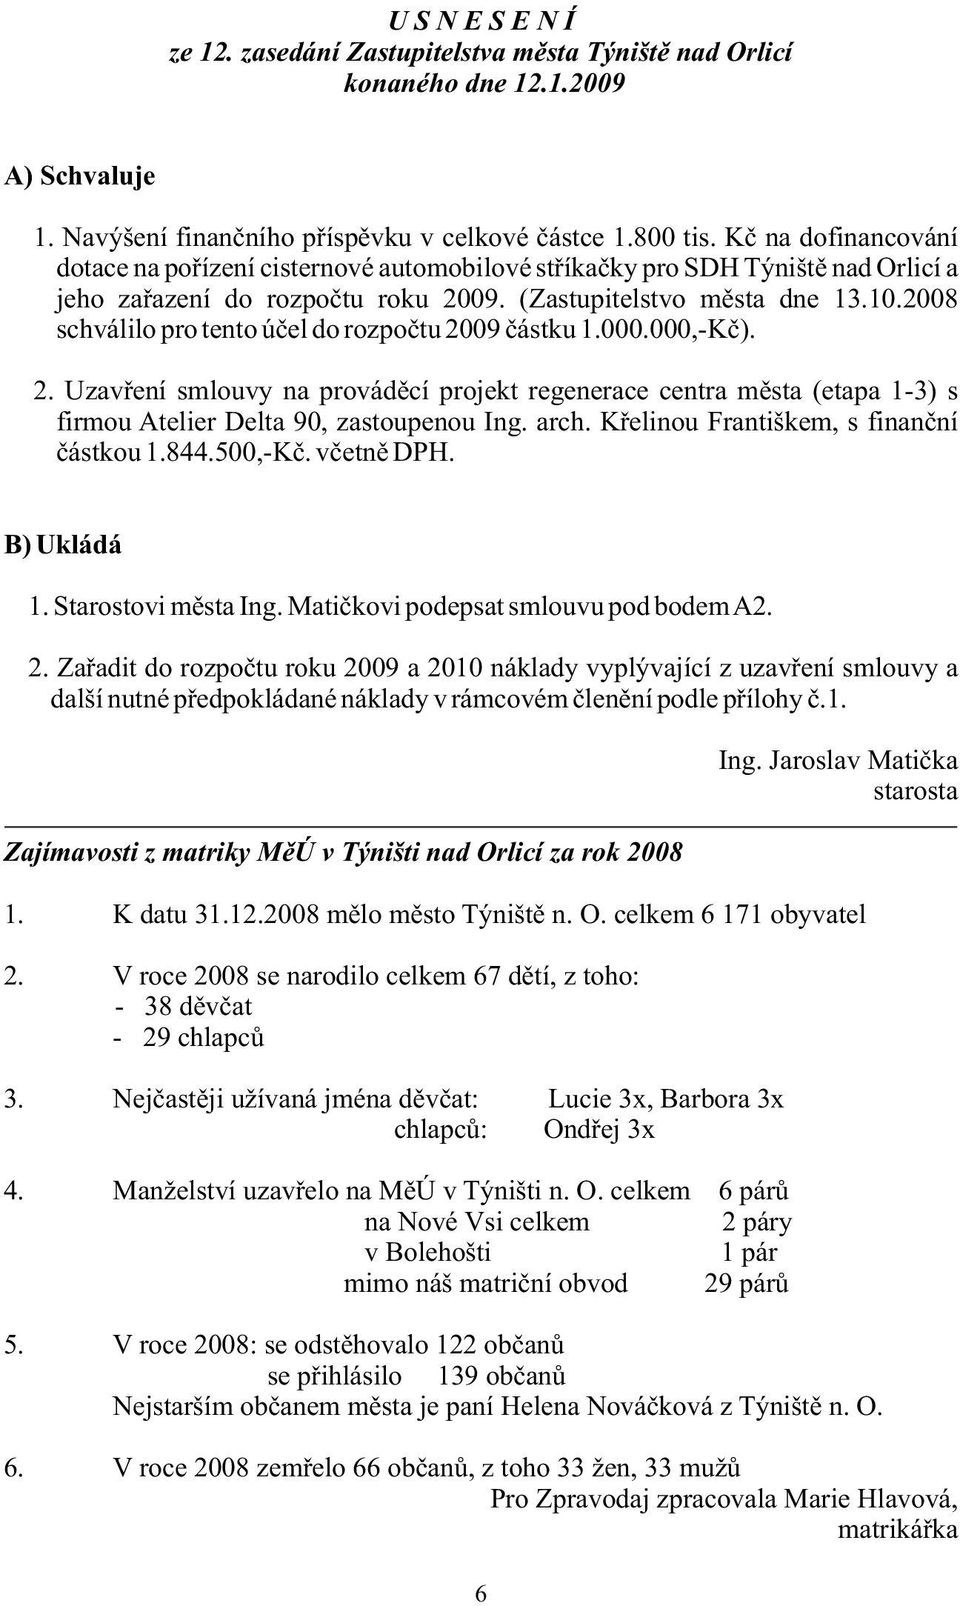 Navýšení finančního příspěvku v celkové částce 1.800 tis. Kč na dofinancování dotace na pořízení cisternové automobilové stříkačky pro SDH Týniště nad Orlicí a jeho zařazení do rozpočtu roku 2009.